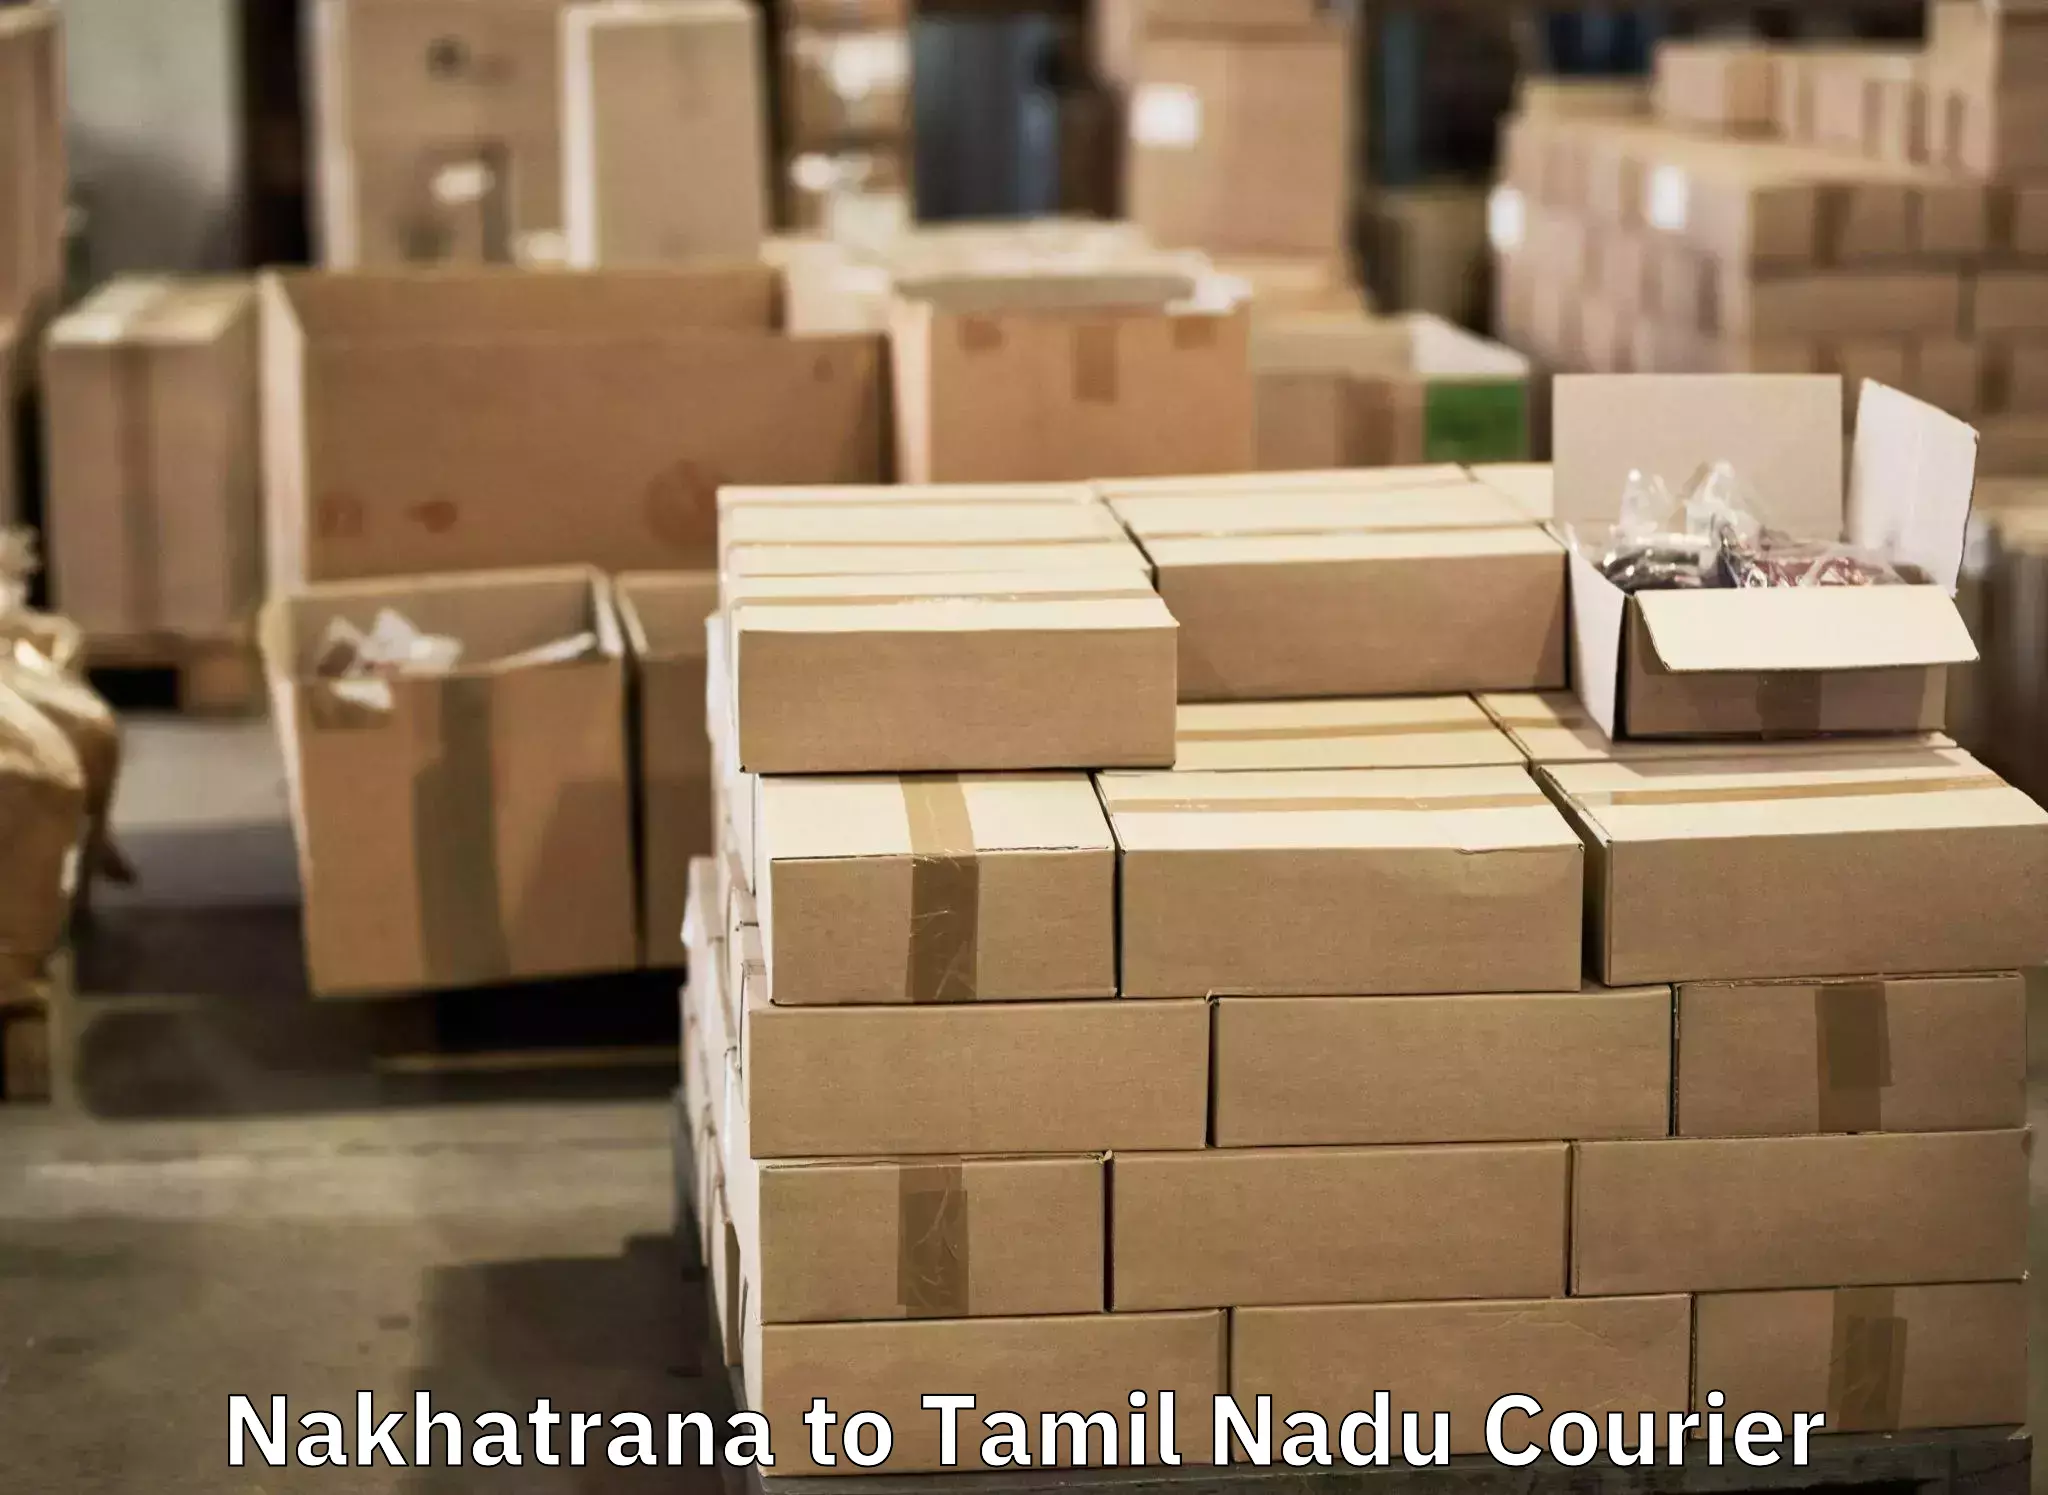 Luggage shipment tracking Nakhatrana to Perunali